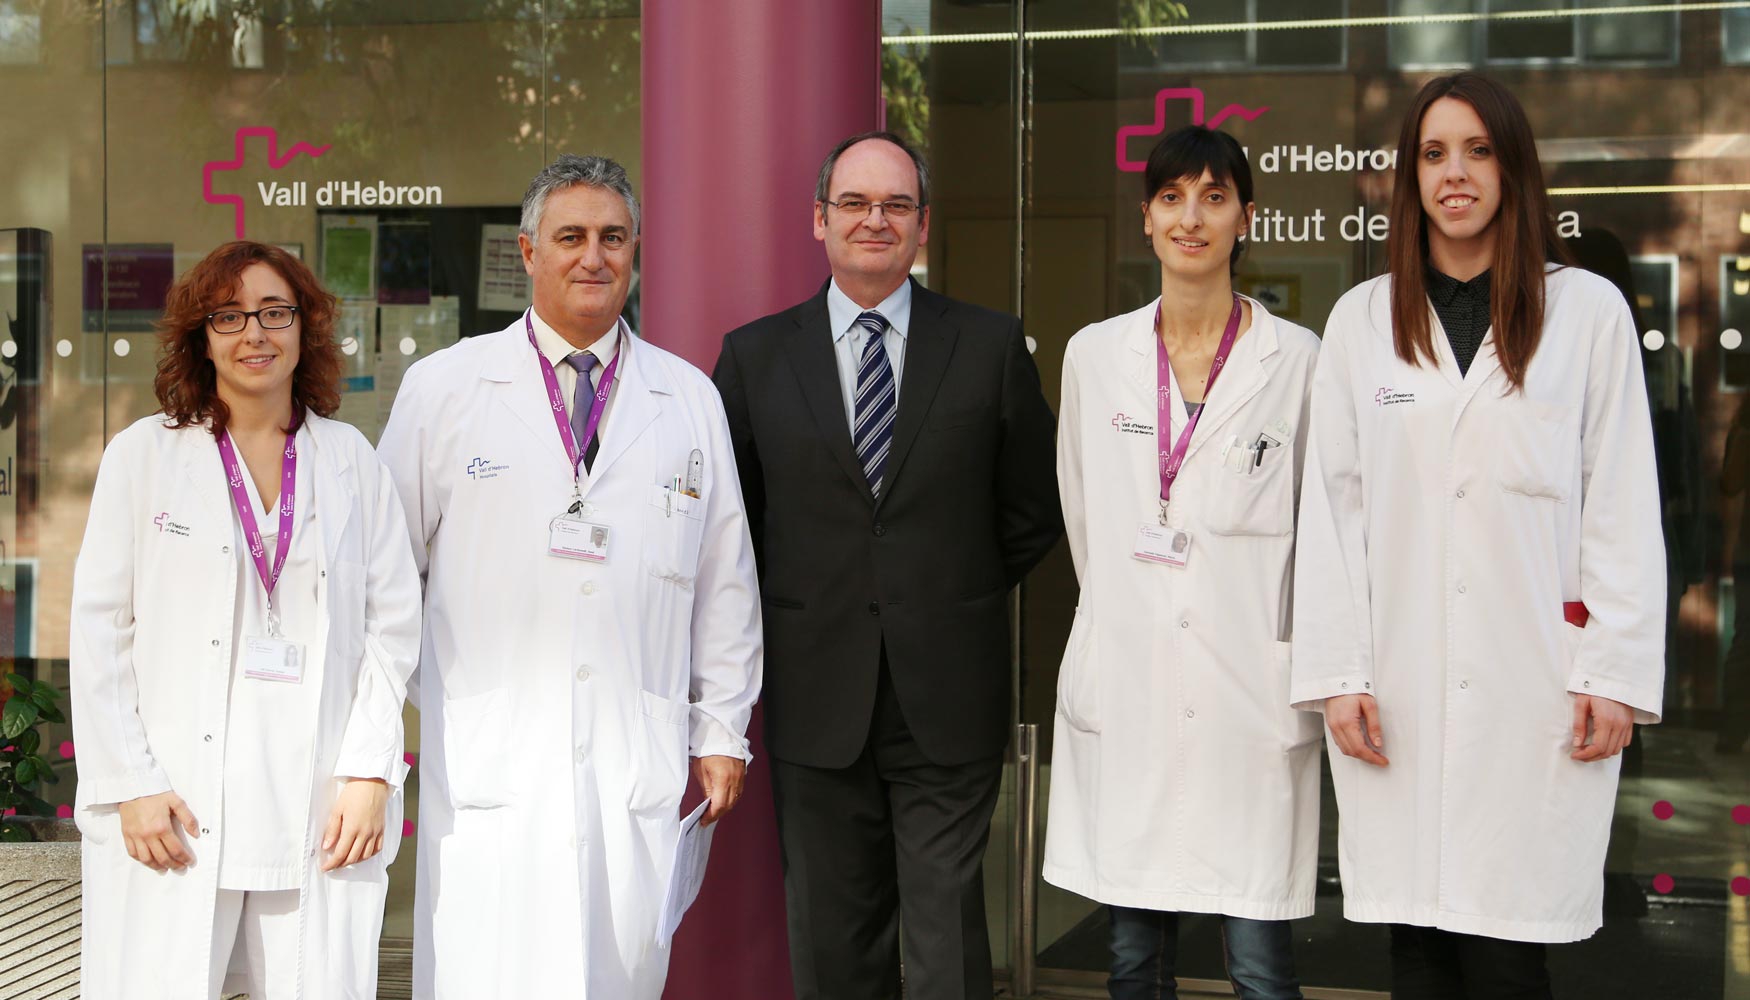 De izquierda a derecha, Gisela Gili, Dr. Josep Gmez, Dr. Raul Insa, Maria Salvad y Alba Montoliu